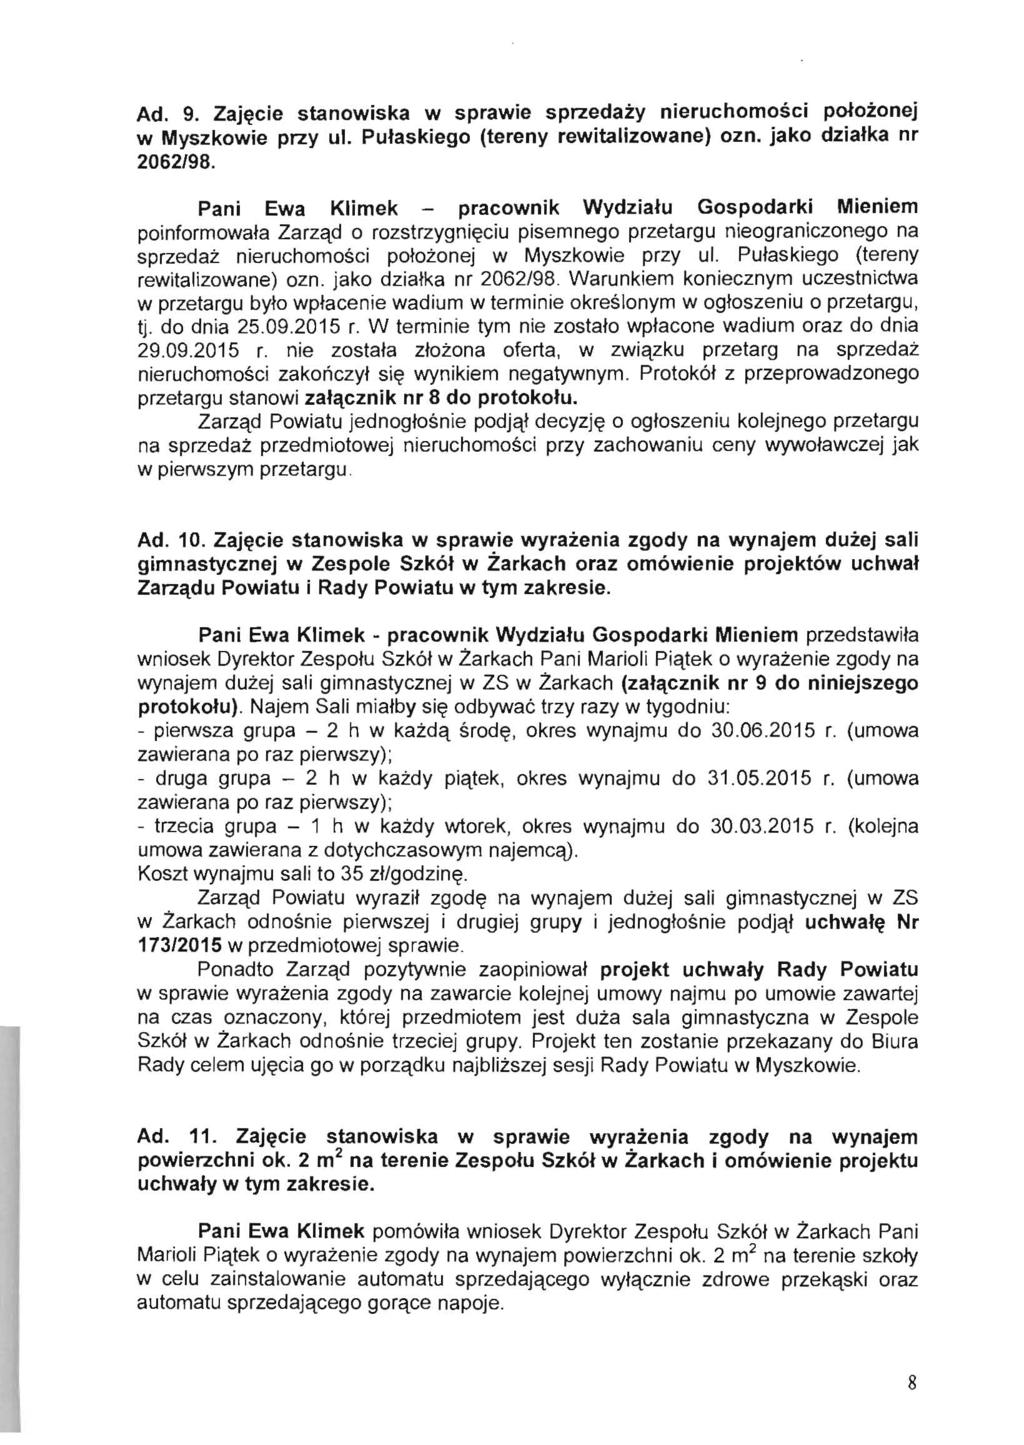 Ad. 9. Zajlilcie stanowiska w sprawie sprzedazy nieruchomosci polozonej w Myszkowie przy ul. Putaskiego (tereny rewitalizowane) ozn. jako dziatka nr 2062/98.